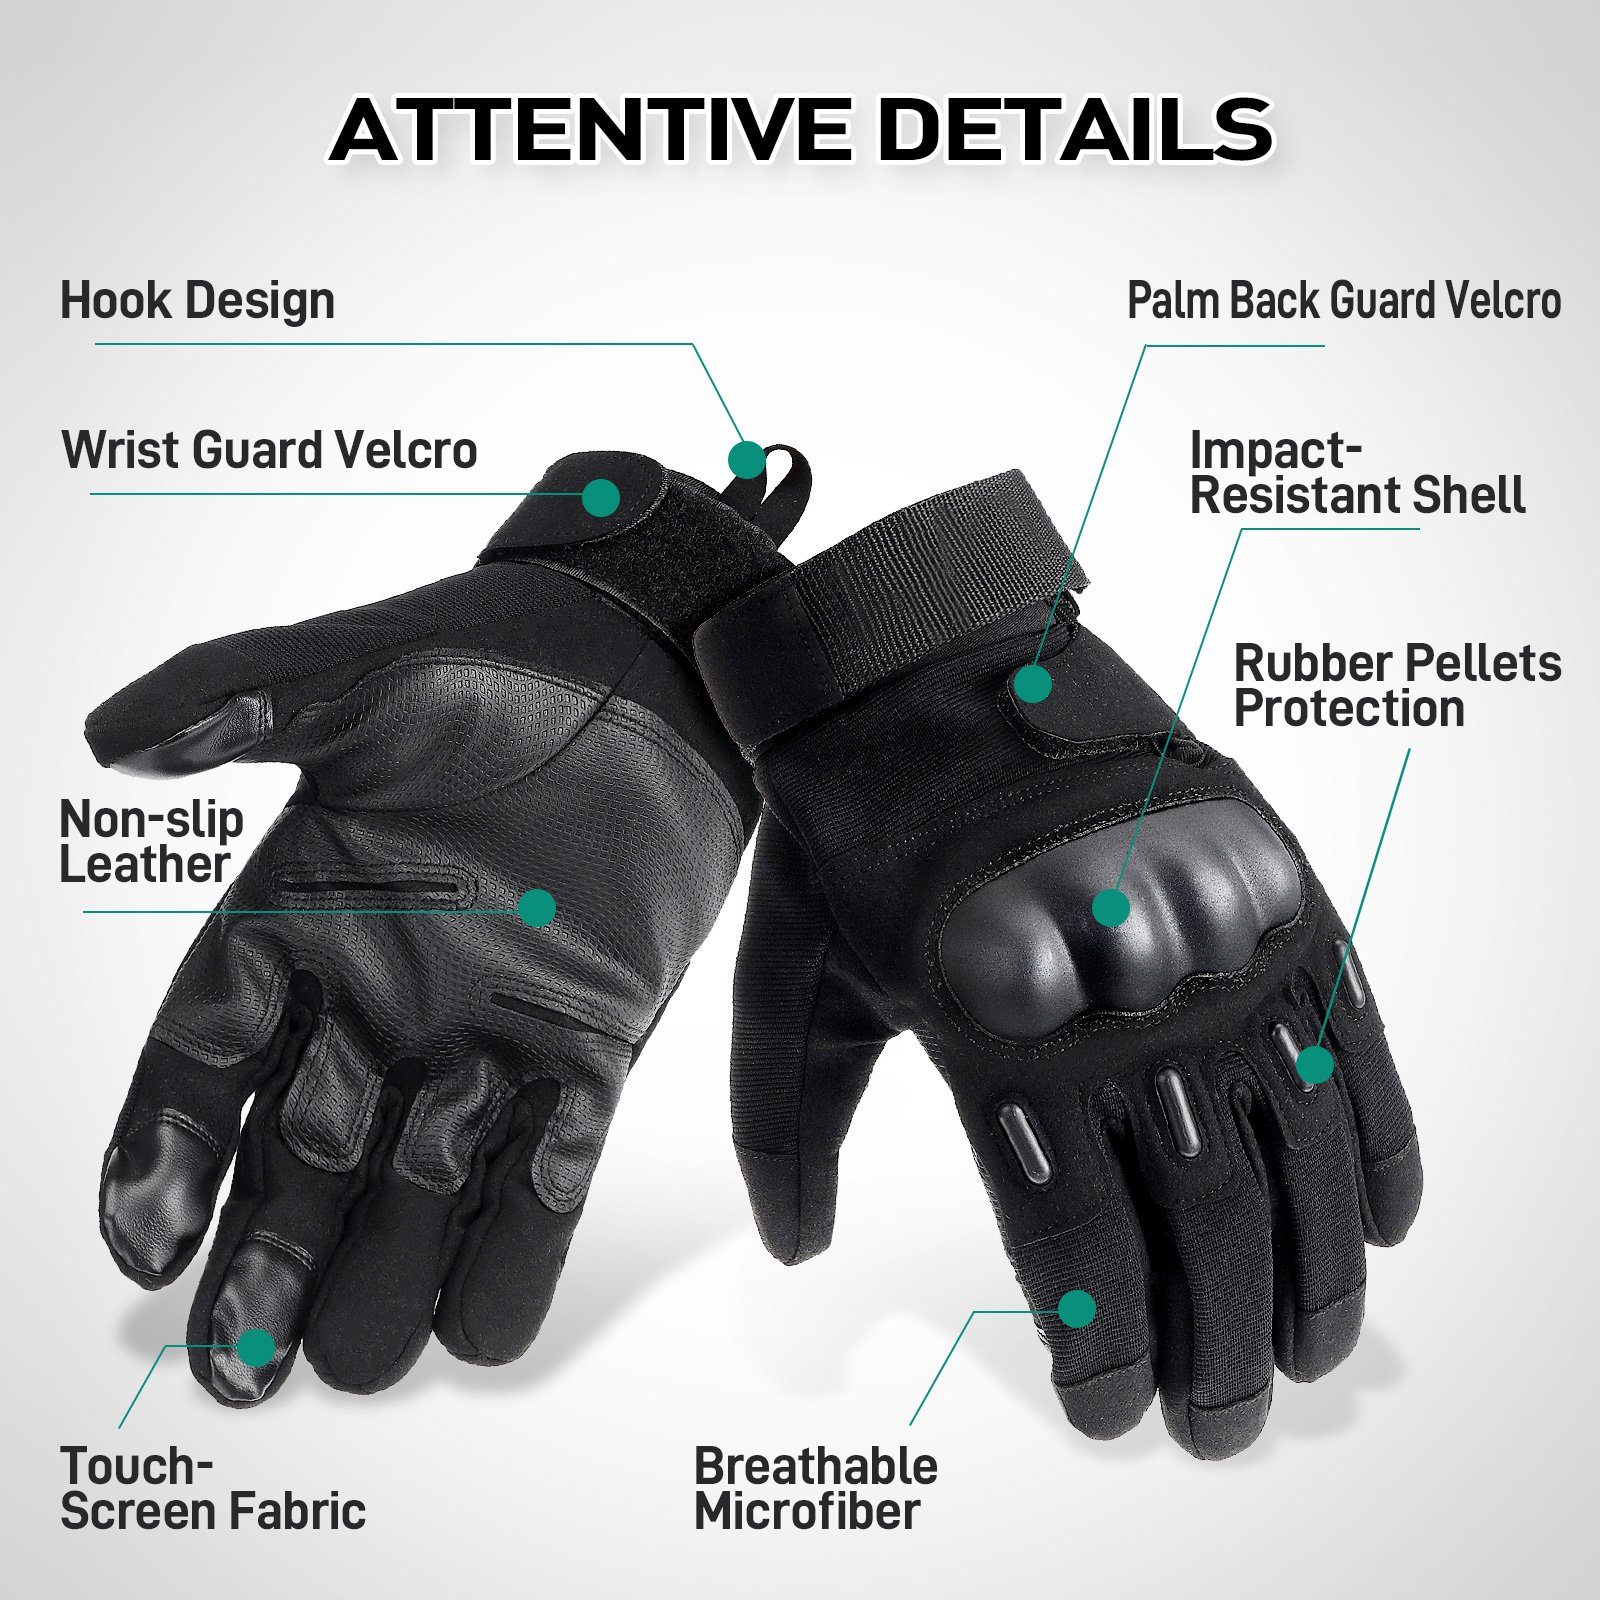 Stil! ELEGIANT sicher und besonders winddichtig, wasserabweisend und Motorradhandschuhe Sicherheit, Komfort Handschuhe: